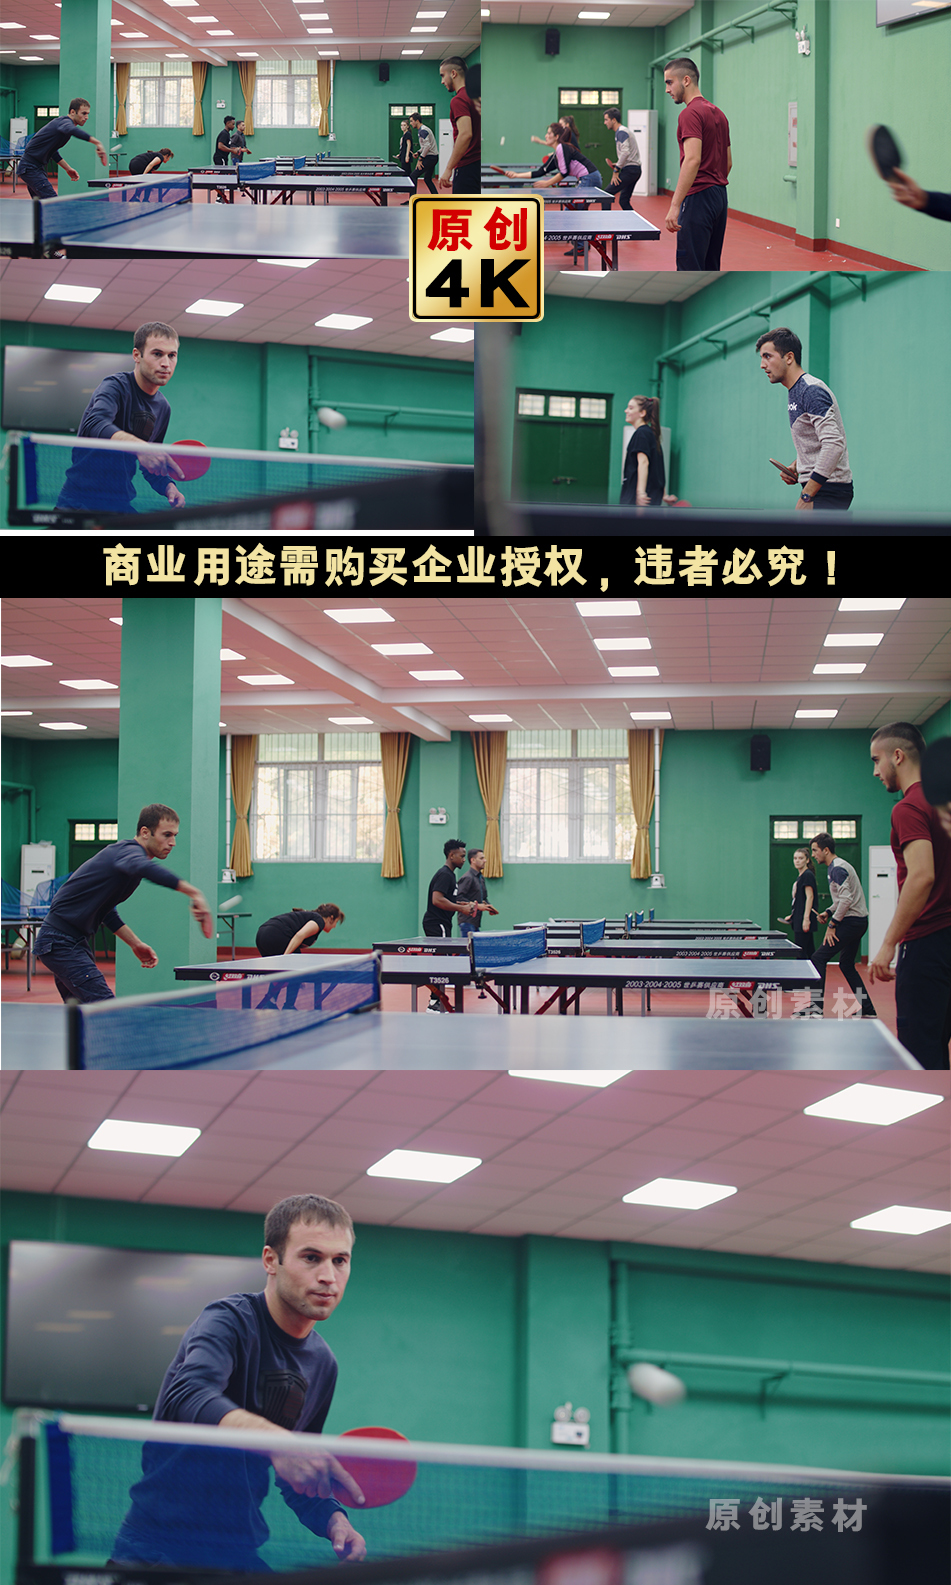 留学生打乒乓球运动上体育课